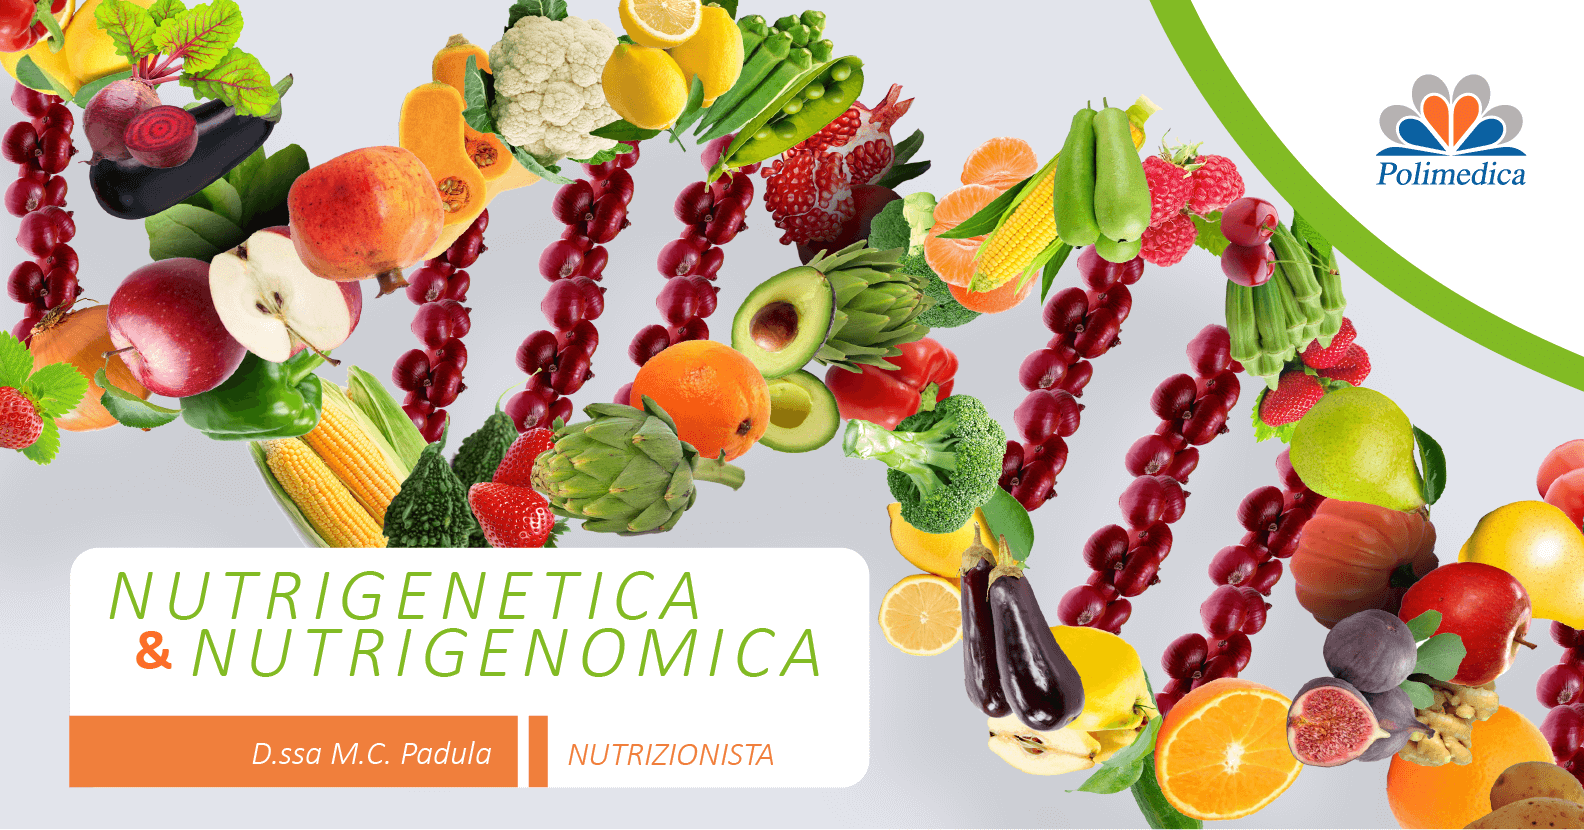 Immagine con logo di Polimendica Melfi, di un segmento di DNA realizzato con tanti tipi di frutta e verdura. Immagine di accompagnamento all'articolo dedicato alla dieta basata sul DNA.